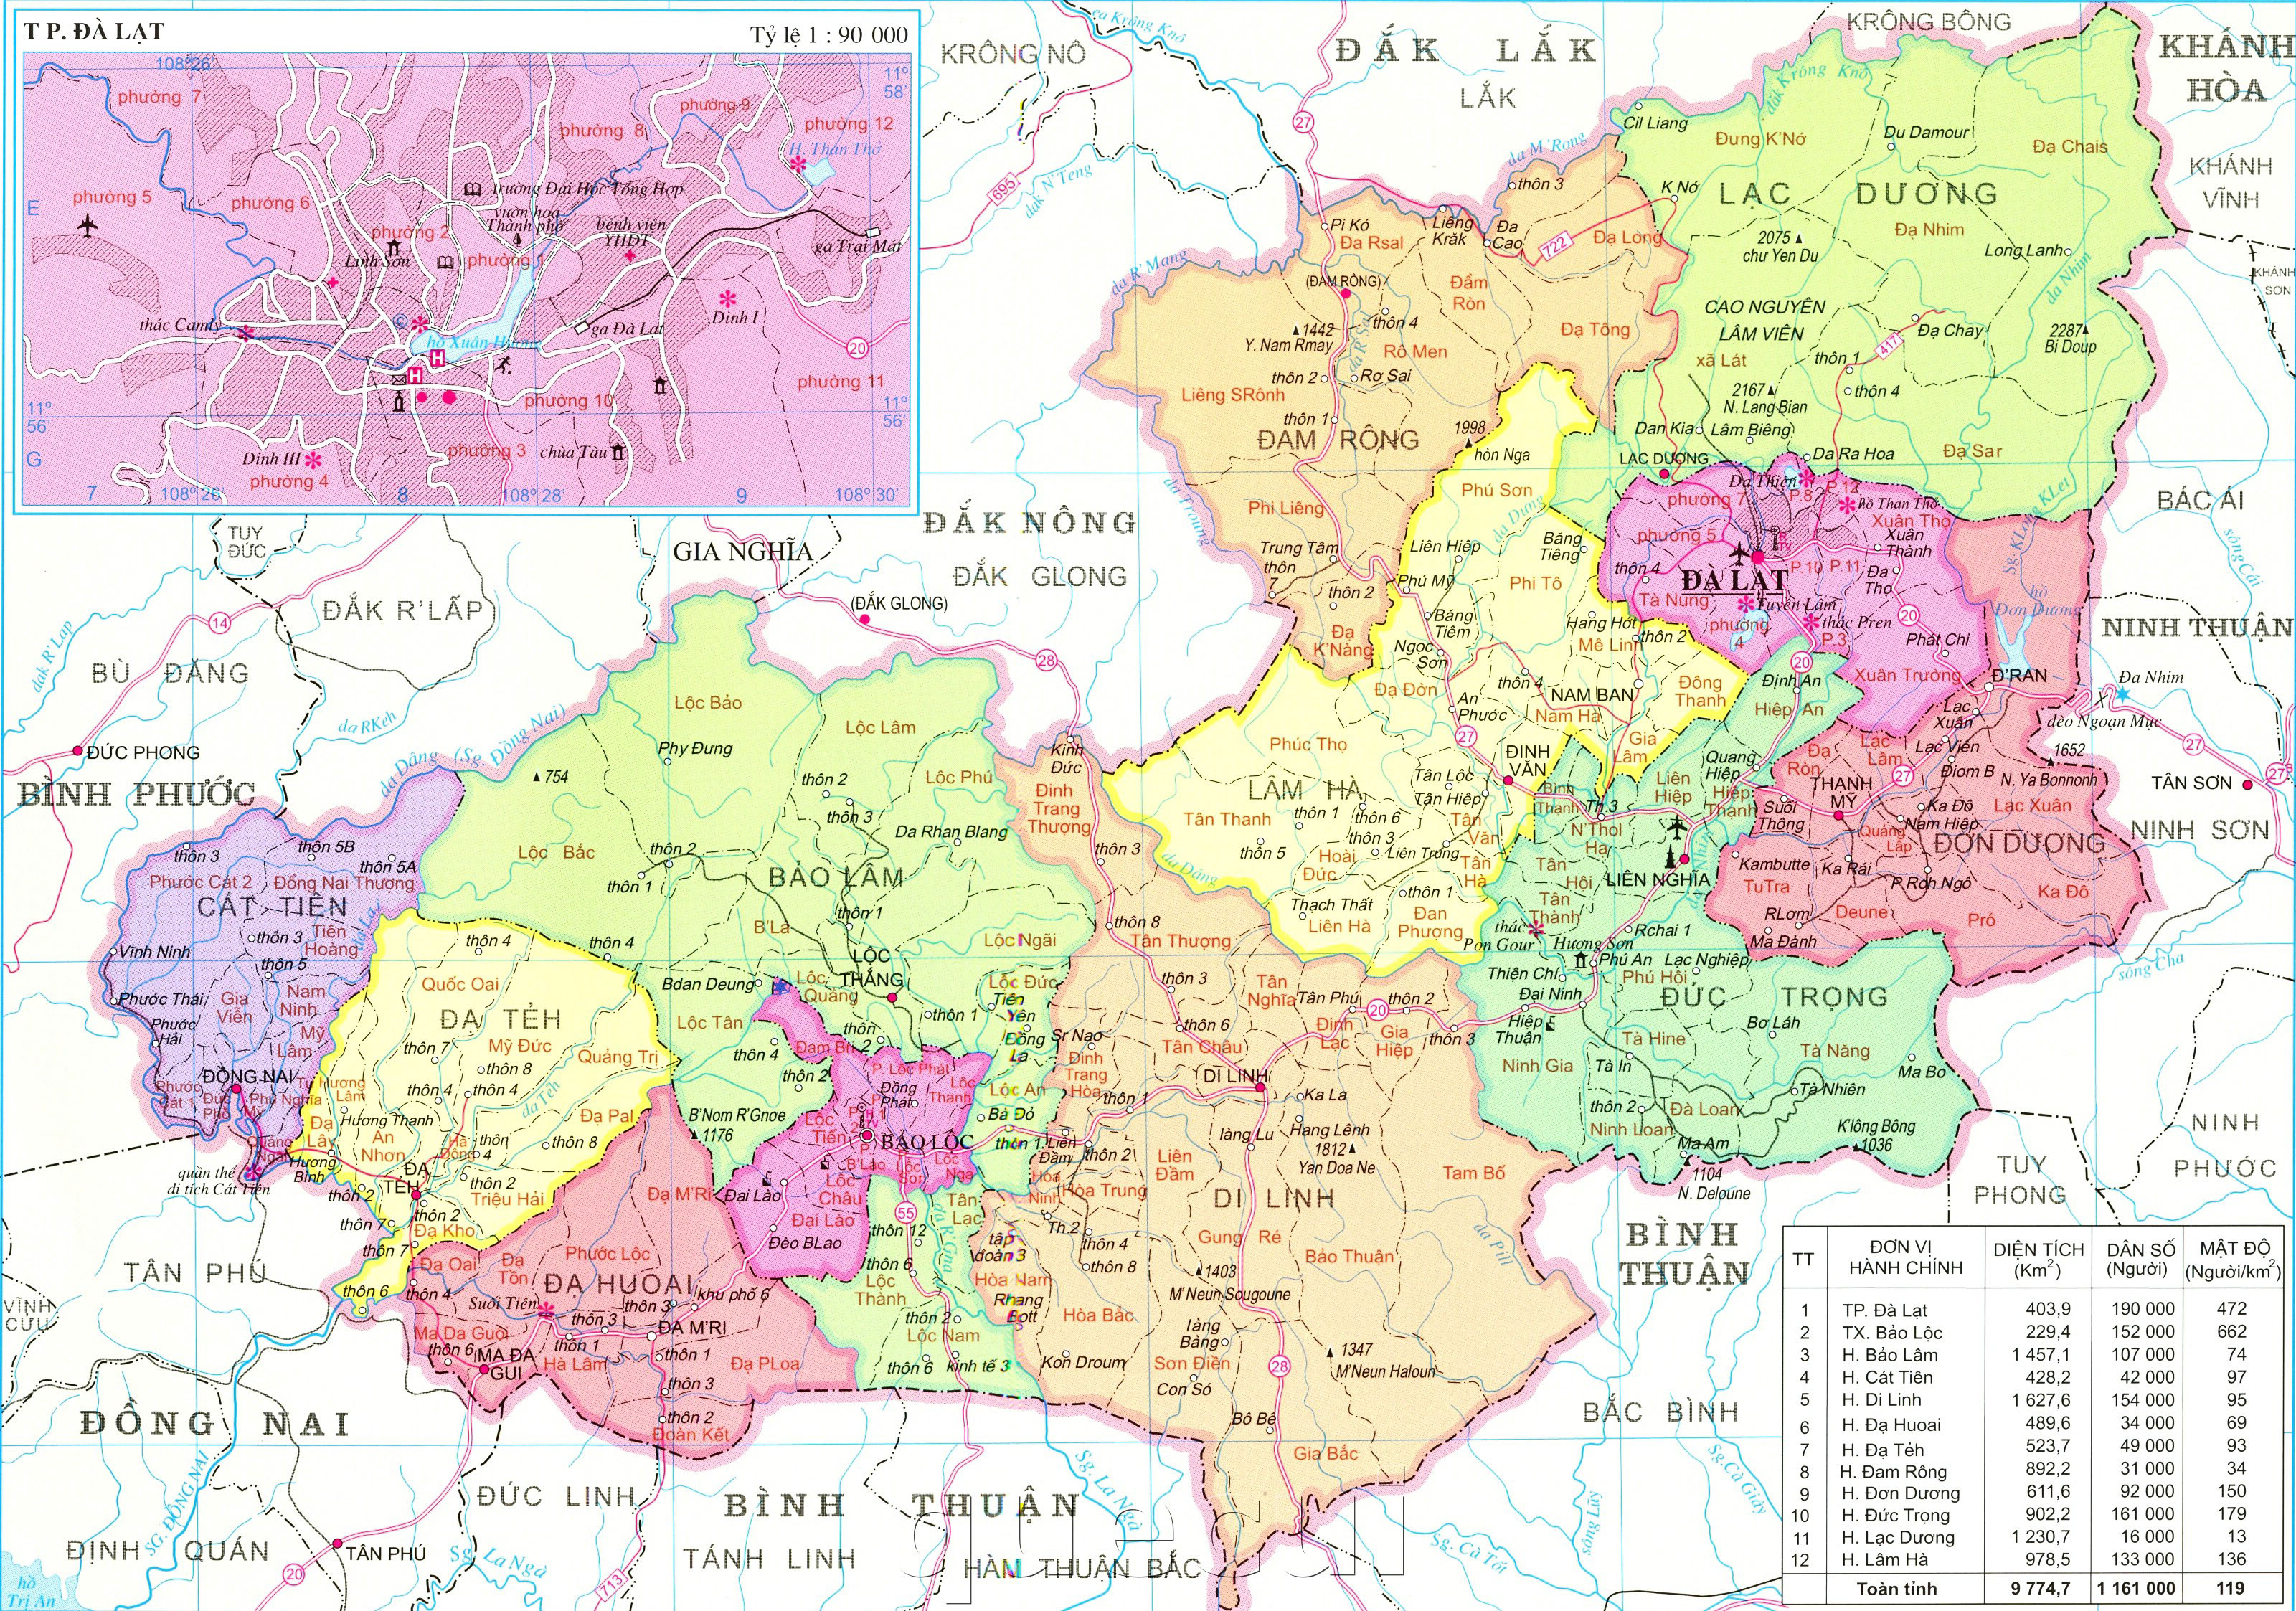 Đến với chúng tôi để chiêm ngưỡng bản đồ hành chính tỉnh Lâm Đồng khổ lớn nhất năm 2024, với sự cập nhật chi tiết về các vùng đất, khu đô thị, khu du lịch tại Lâm Đồng. Bạn sẽ có trải nghiệm tuyệt vời khi sử dụng bản đồ này để điều hướng tại Lâm Đồng.